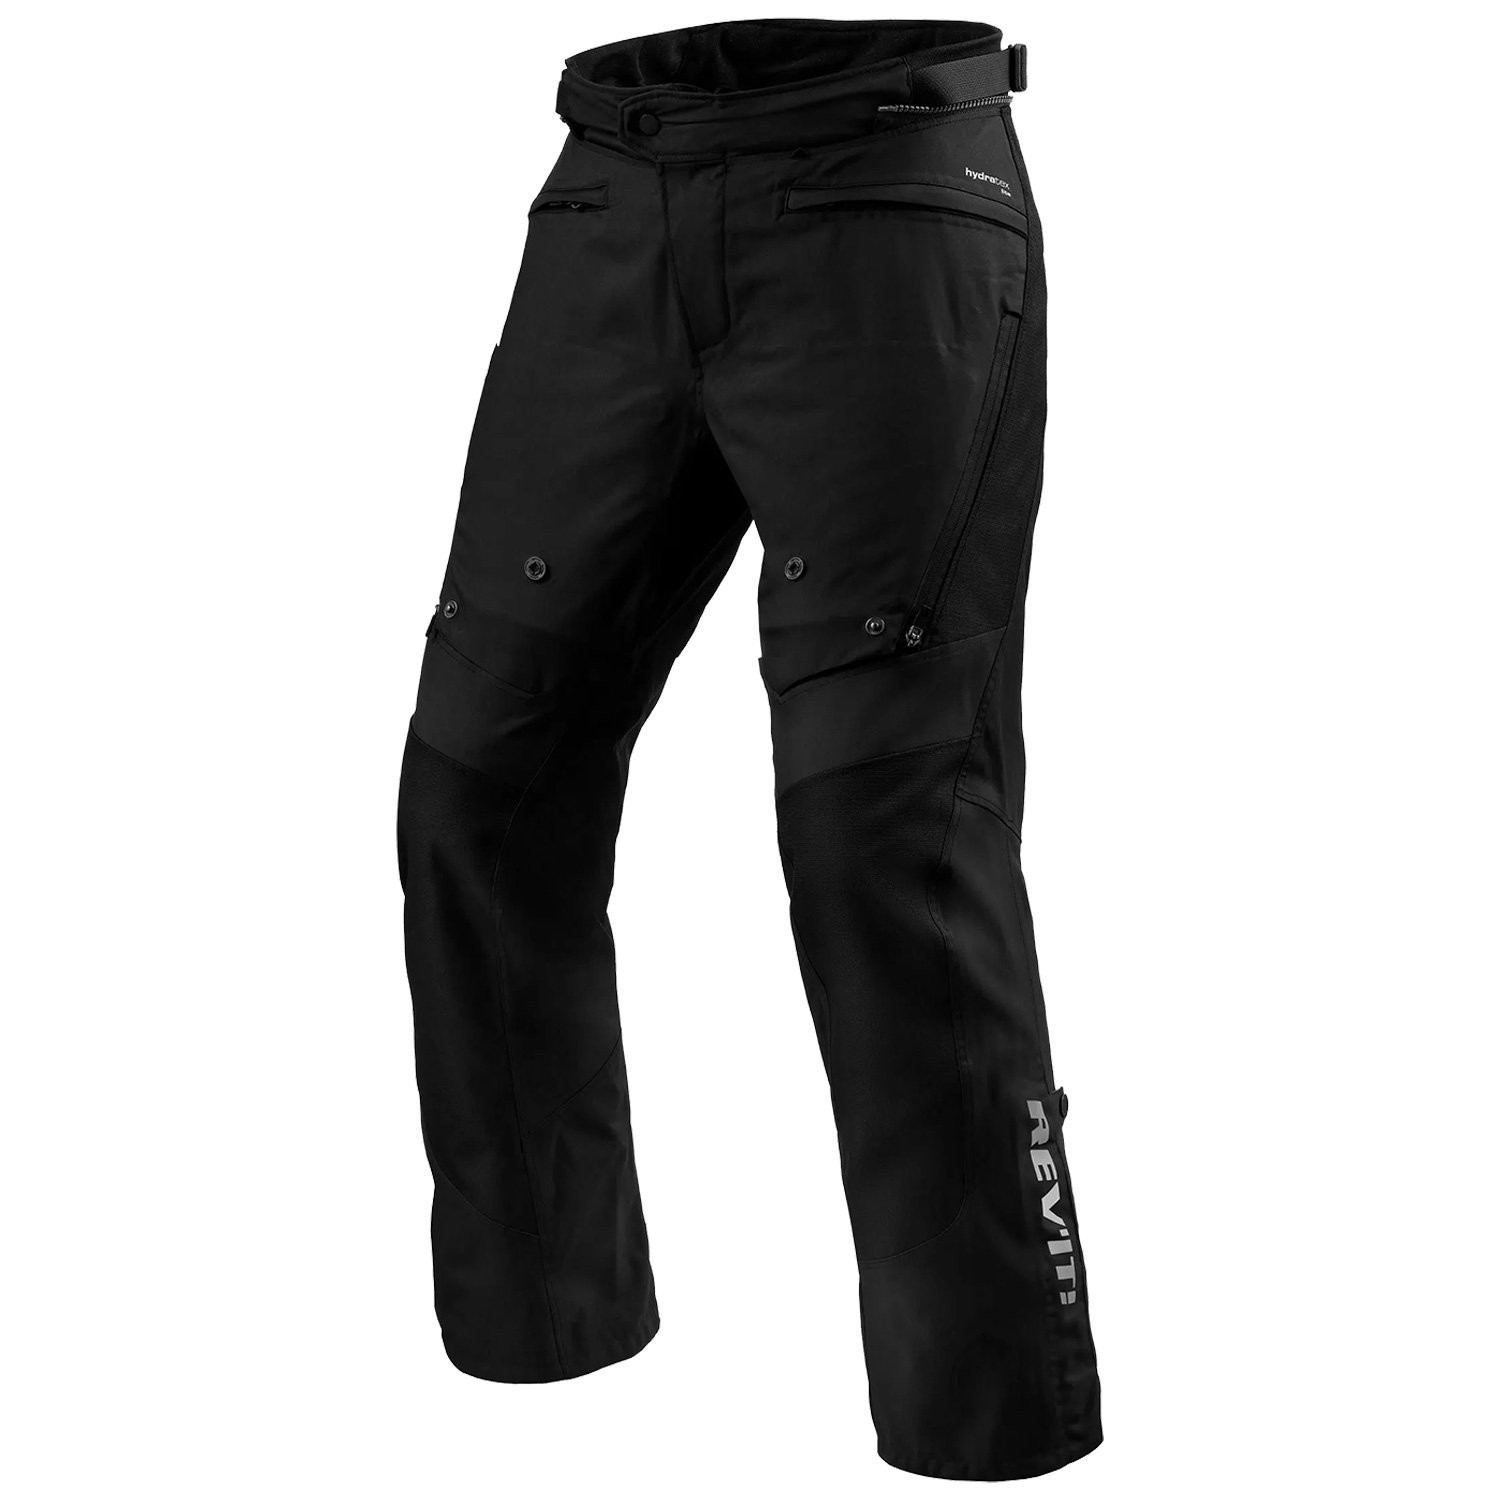 REV'IT! Pants Horizon 3 H2O Black Standard Motorcycle Pants Size XL